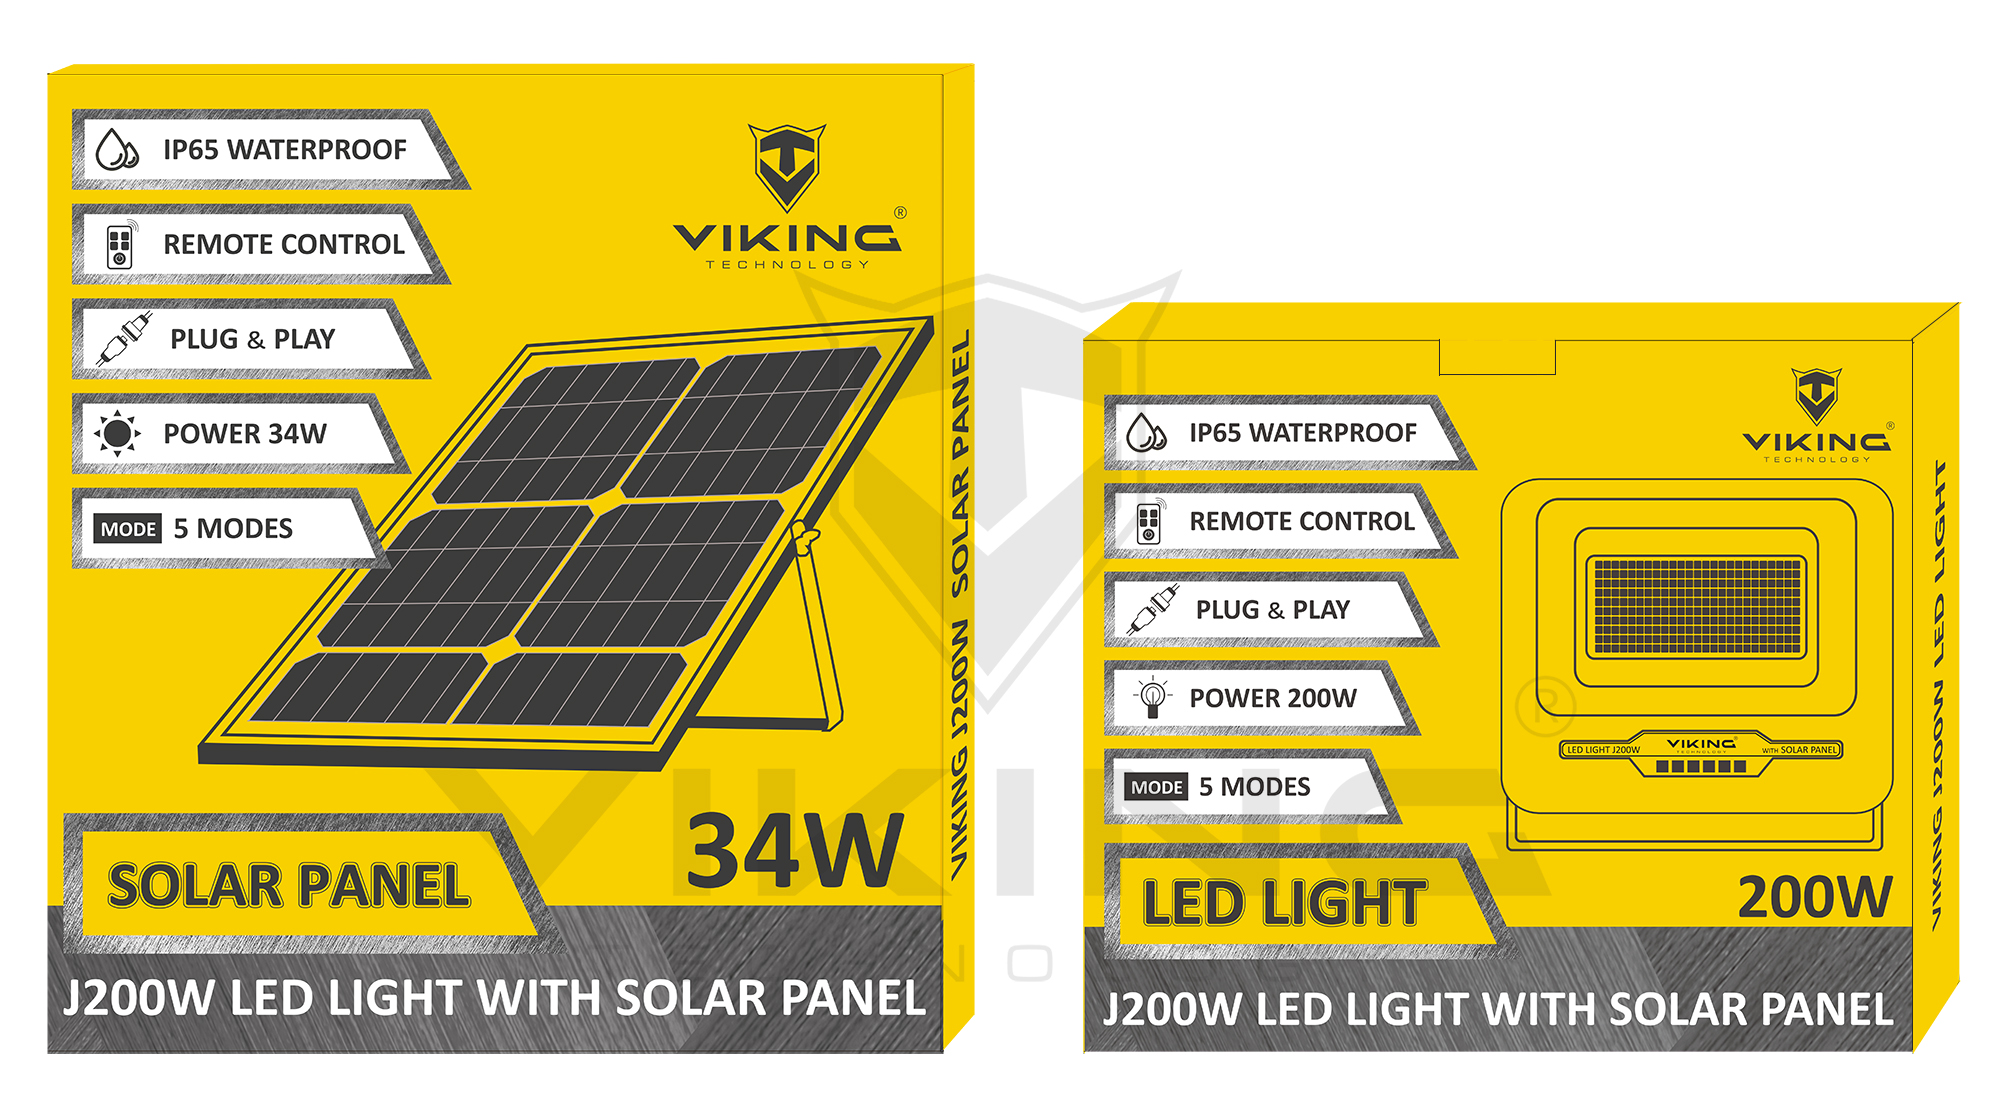 Obrázek LED světlo Viking J200W se solárním panelem